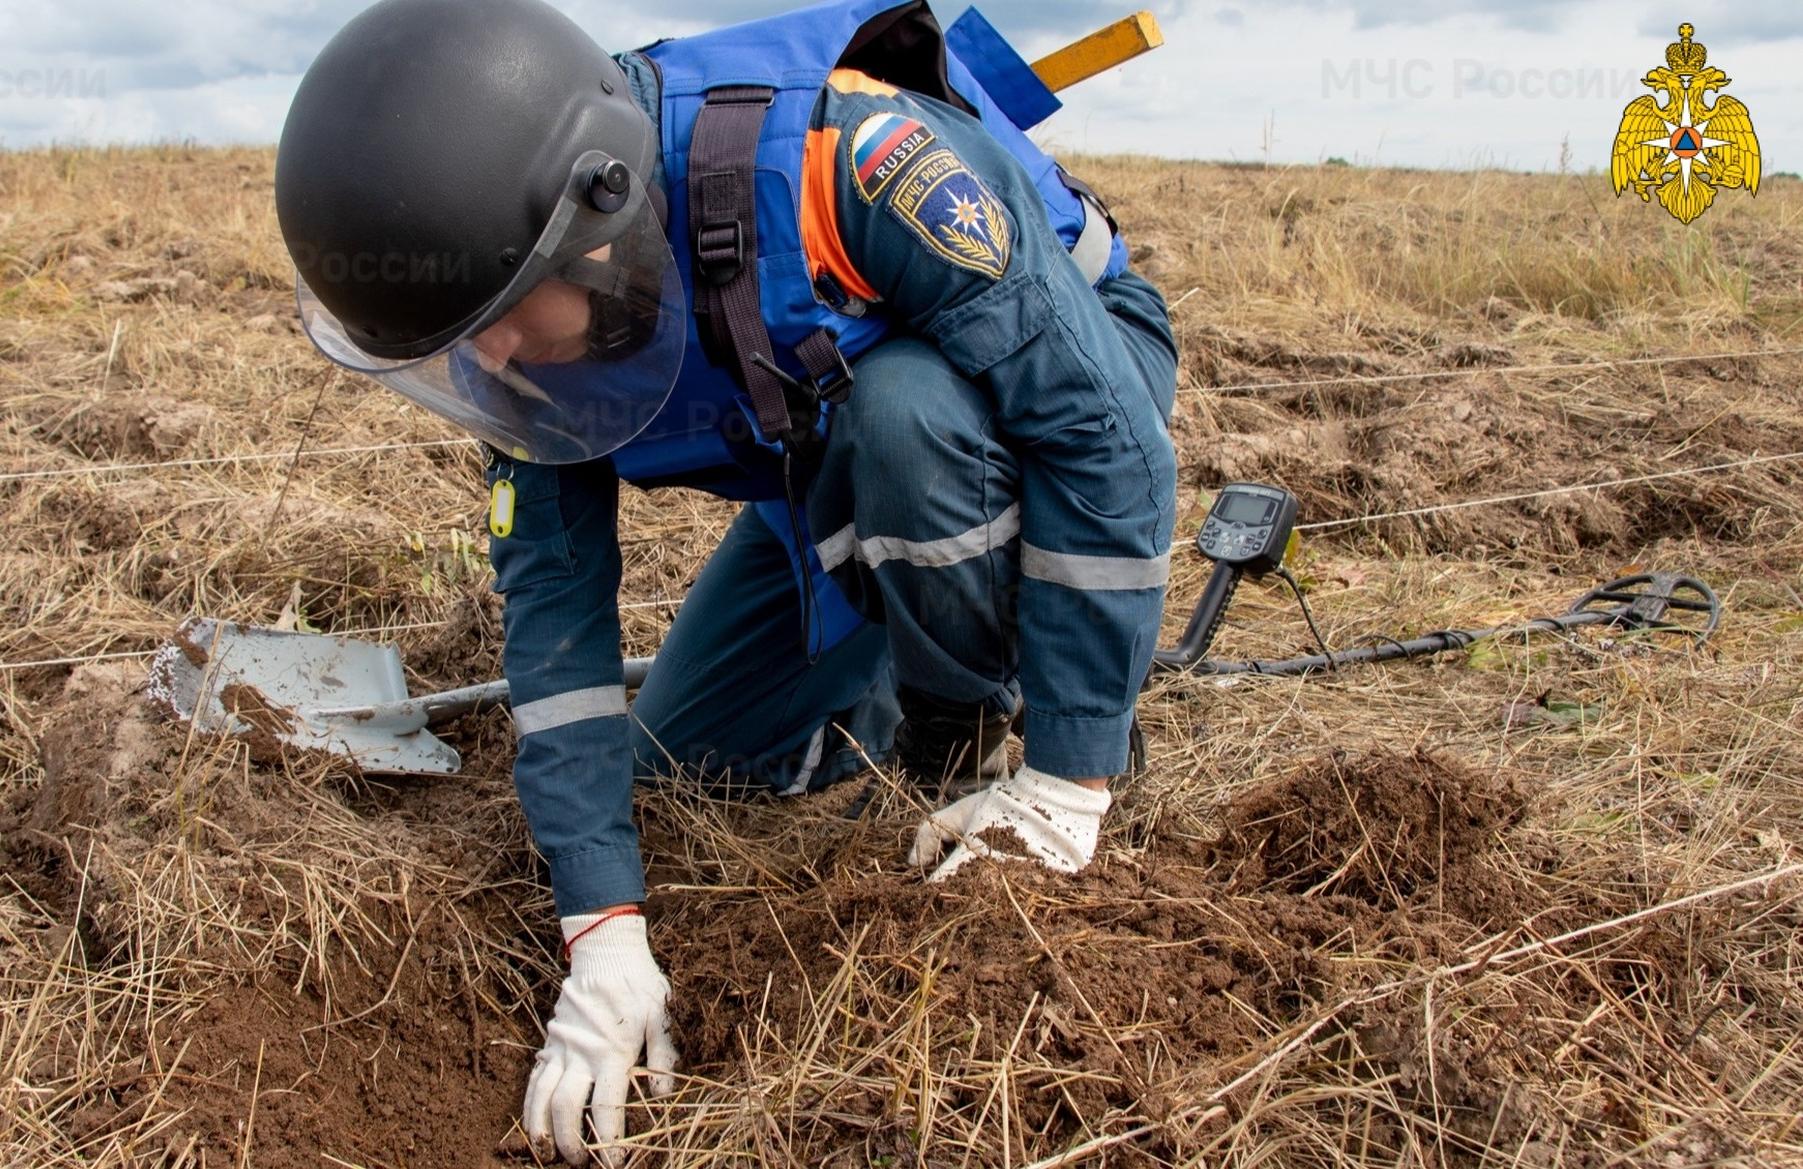 У кемпинга в Тверской области нашли 8 боеприпасов времен войны